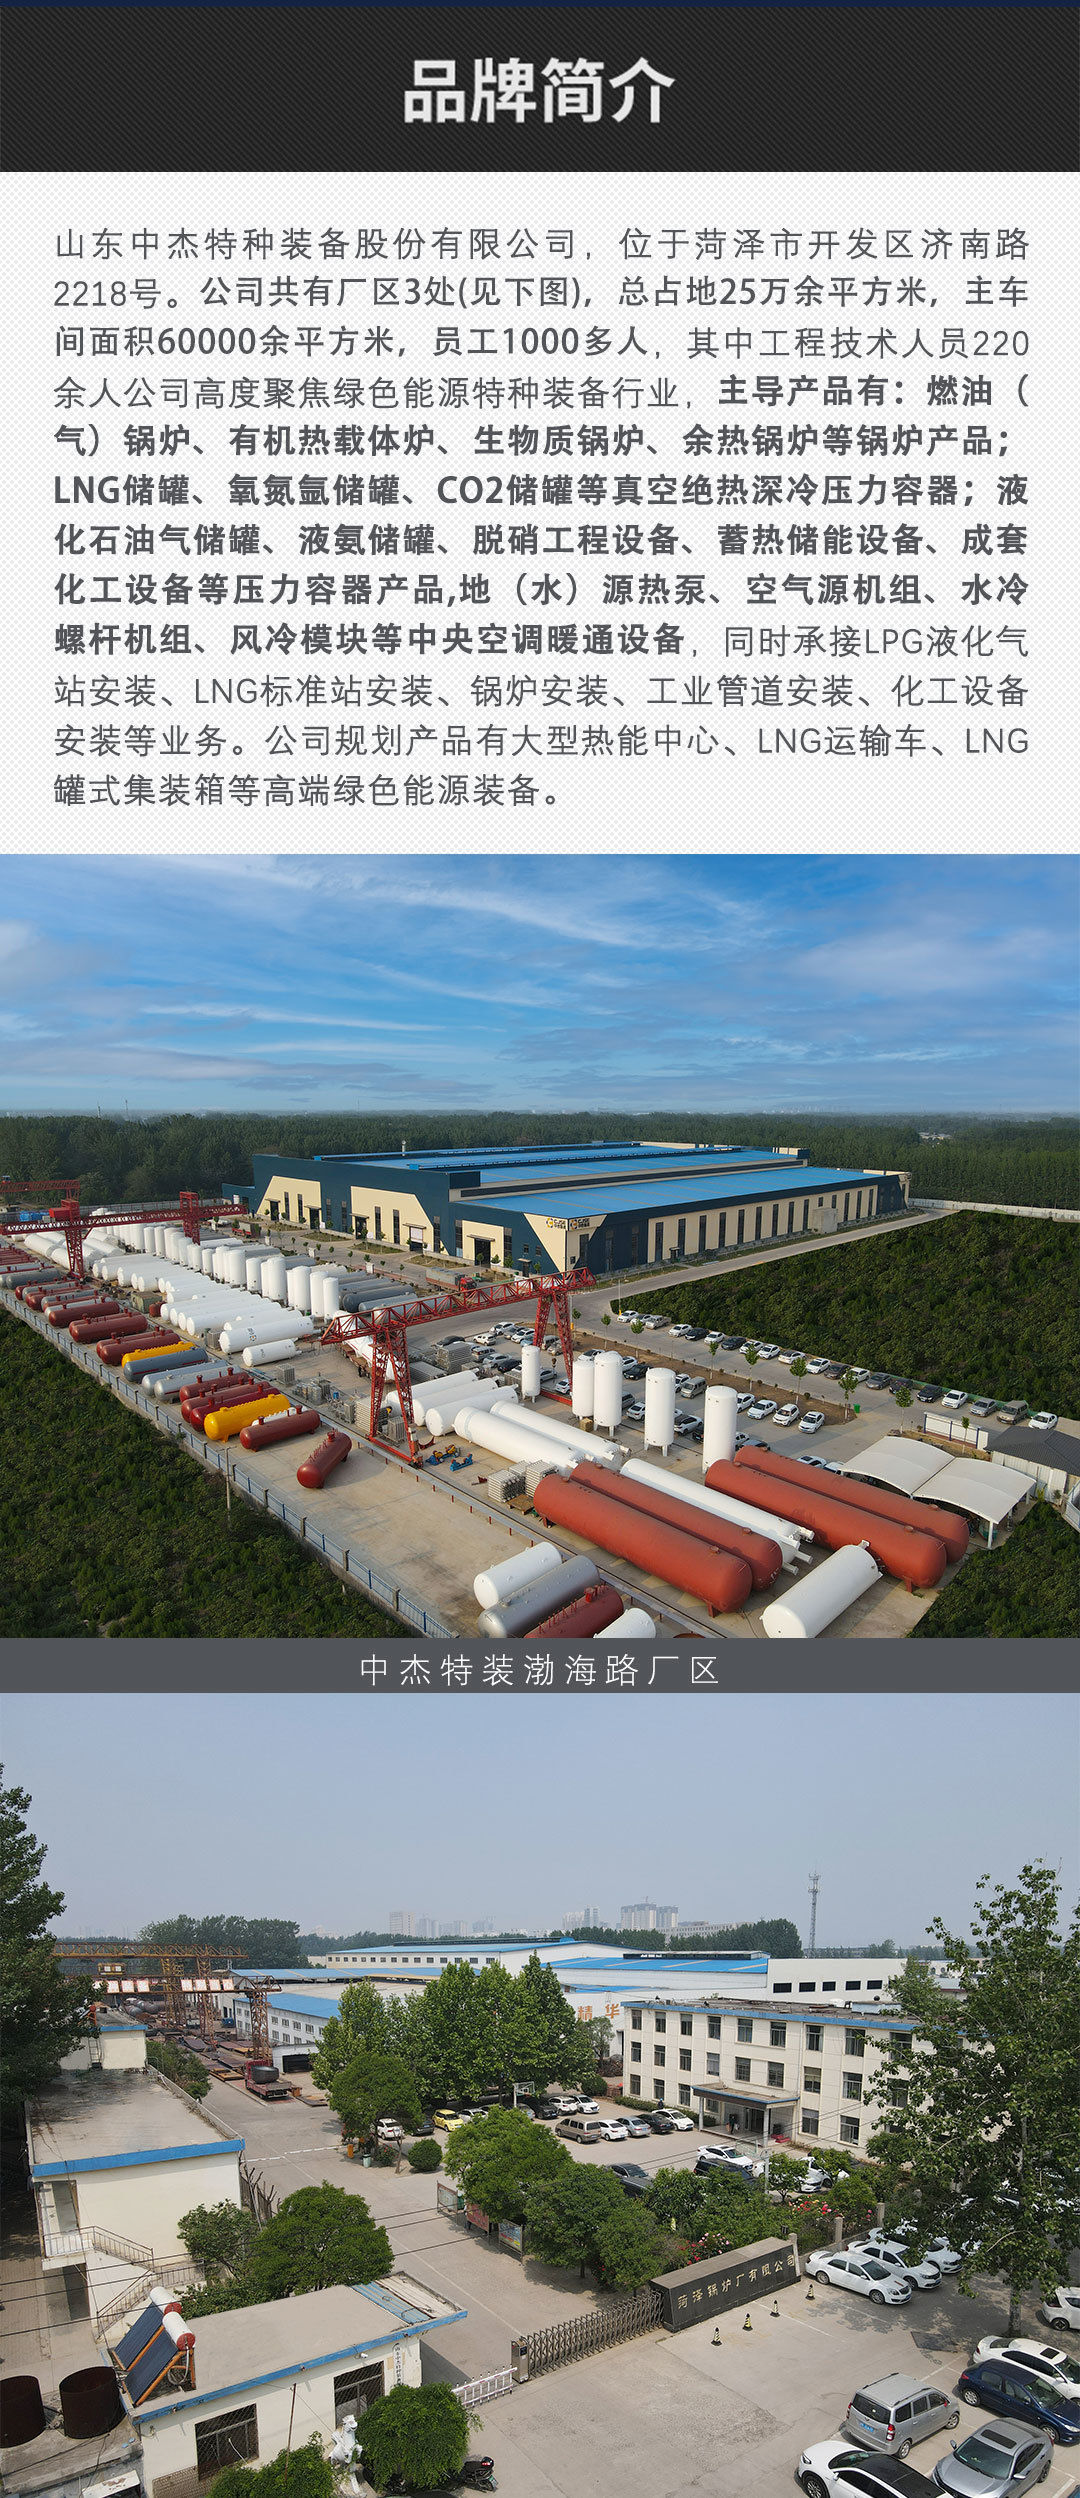 菏锅品牌 WNS燃气蒸汽锅炉 工业锅炉生产厂家示例图3